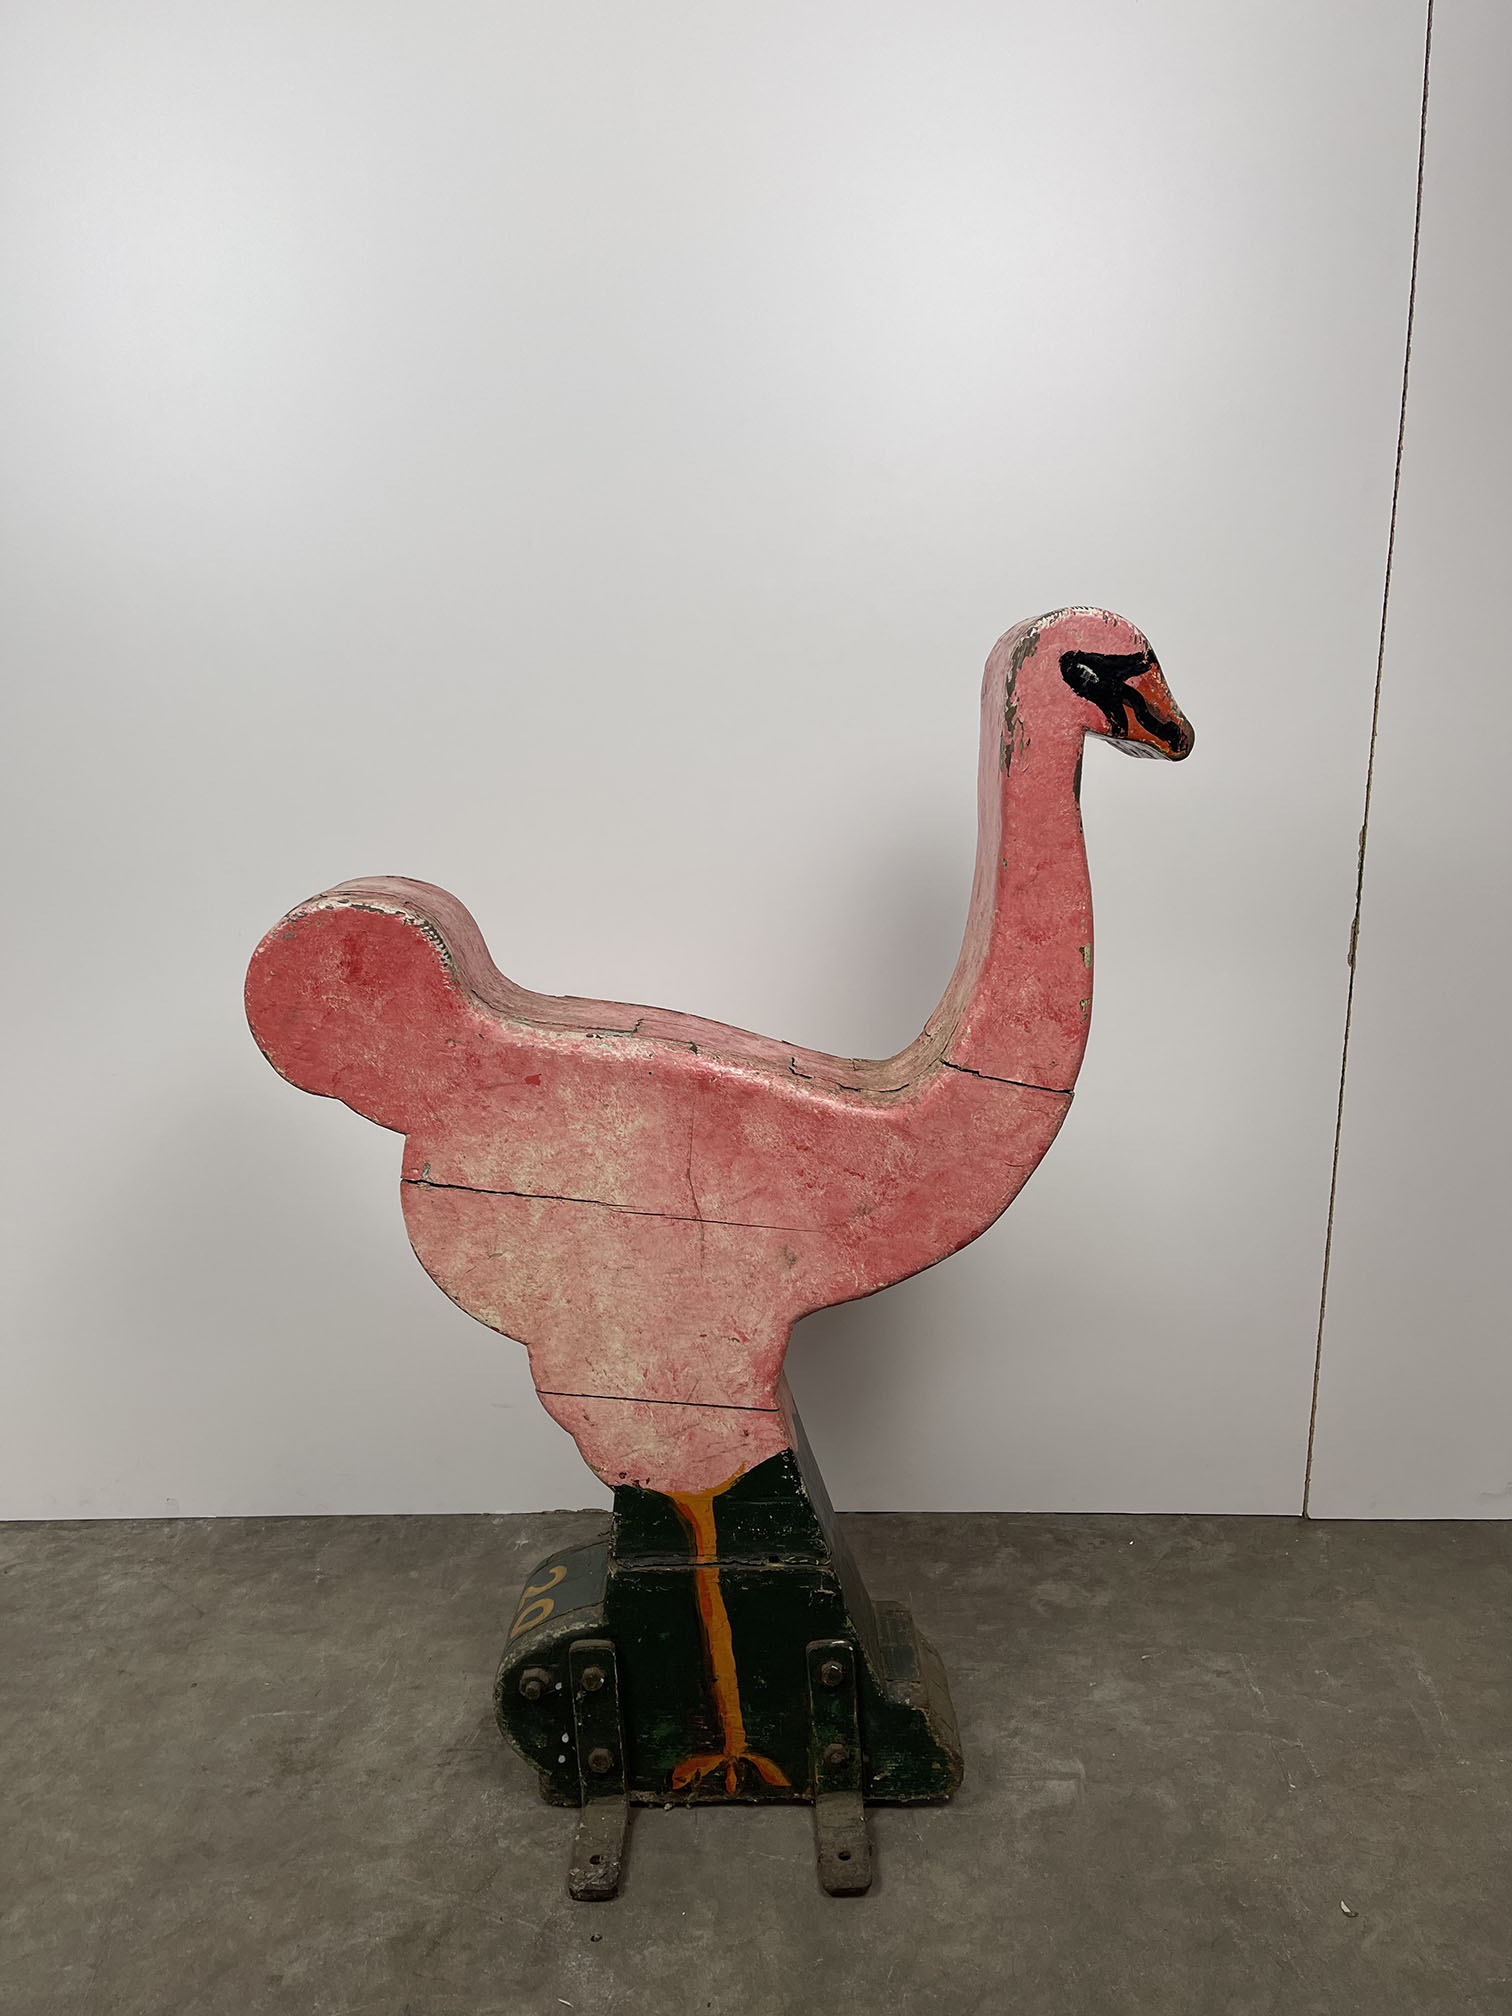 Antique Children's Flamingo Caroulsel Ride - Image 4 of 8